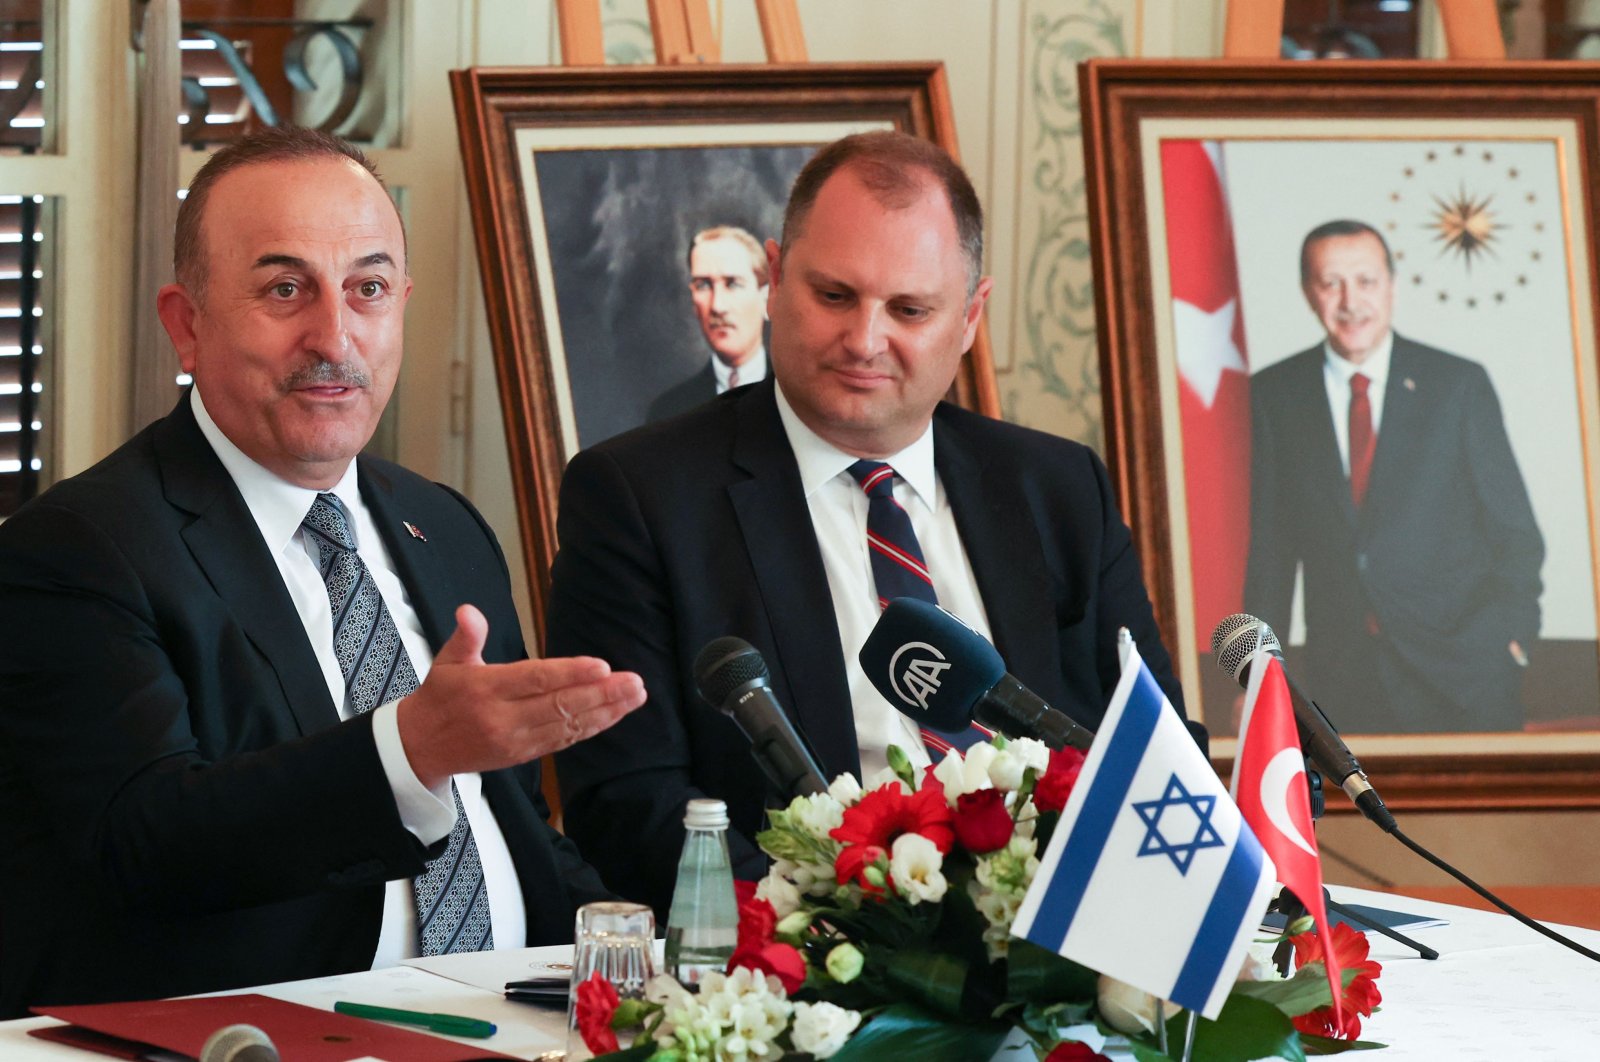 Kunjungan sukses Mevlüt avuşoğlu dan era baru dengan Israel